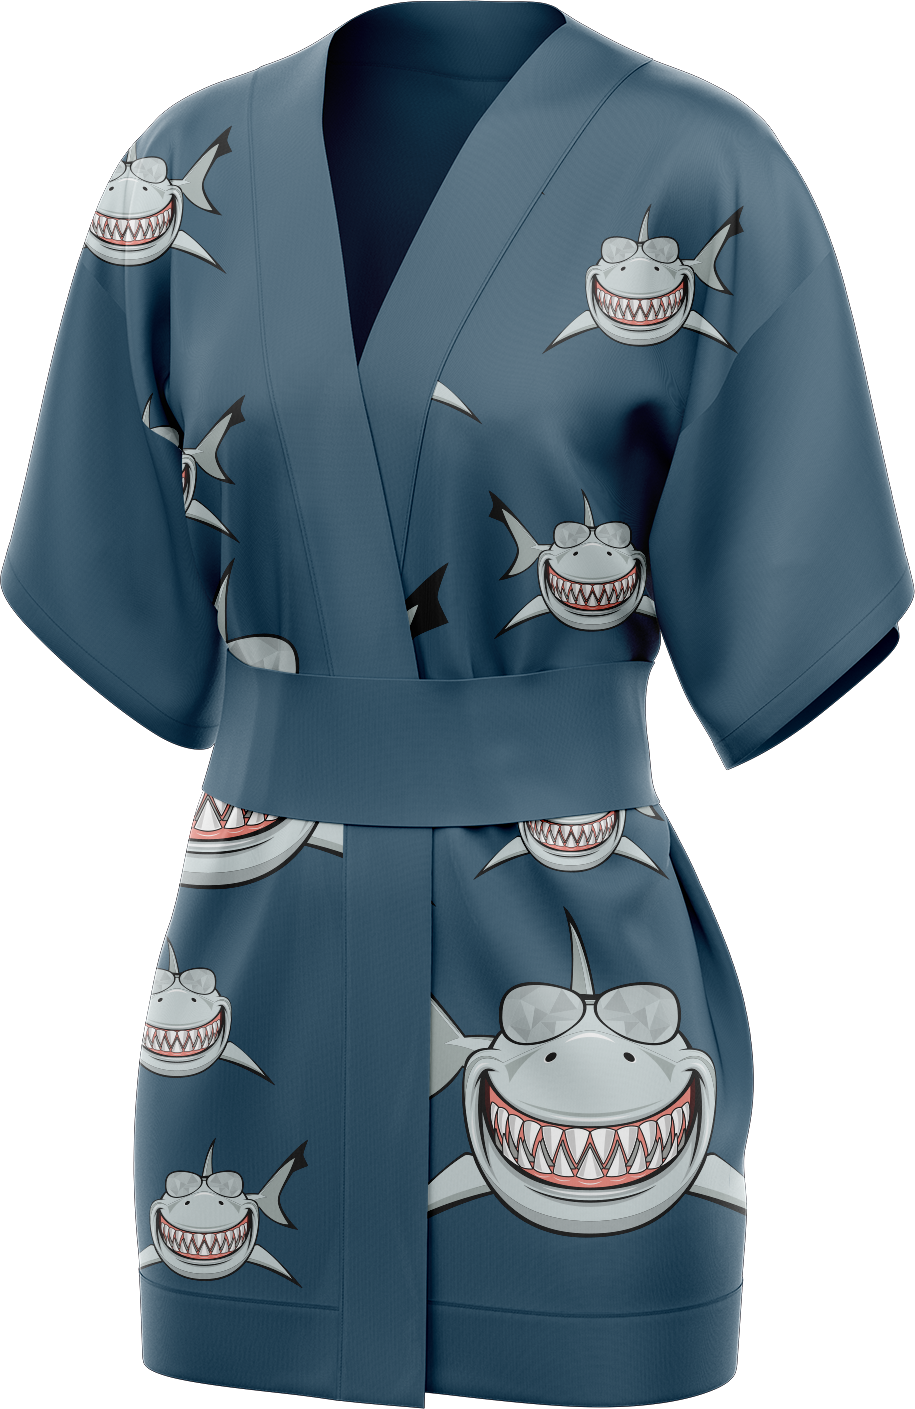 Snazzy Shark Kimono